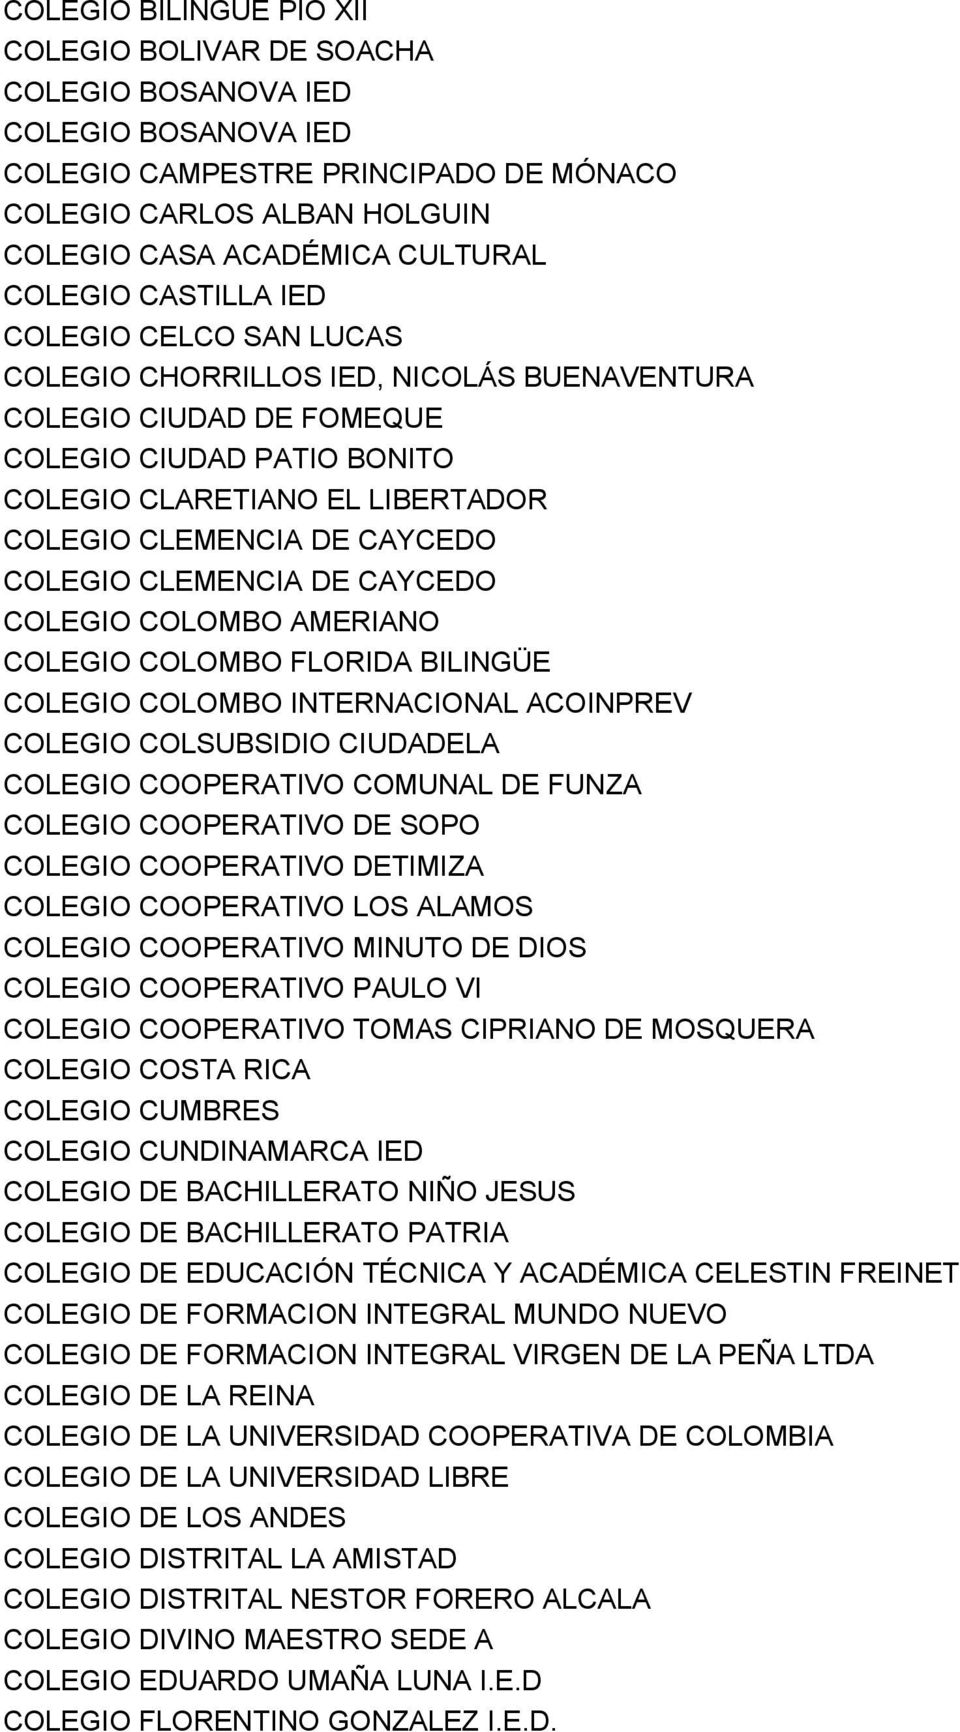 CAYCEDO COLEGIO CLEMENCIA DE CAYCEDO COLEGIO COLOMBO AMERIANO COLEGIO COLOMBO FLORIDA BILINGÜE COLEGIO COLOMBO INTERNACIONAL ACOINPREV COLEGIO COLSUBSIDIO CIUDADELA COLEGIO COOPERATIVO COMUNAL DE